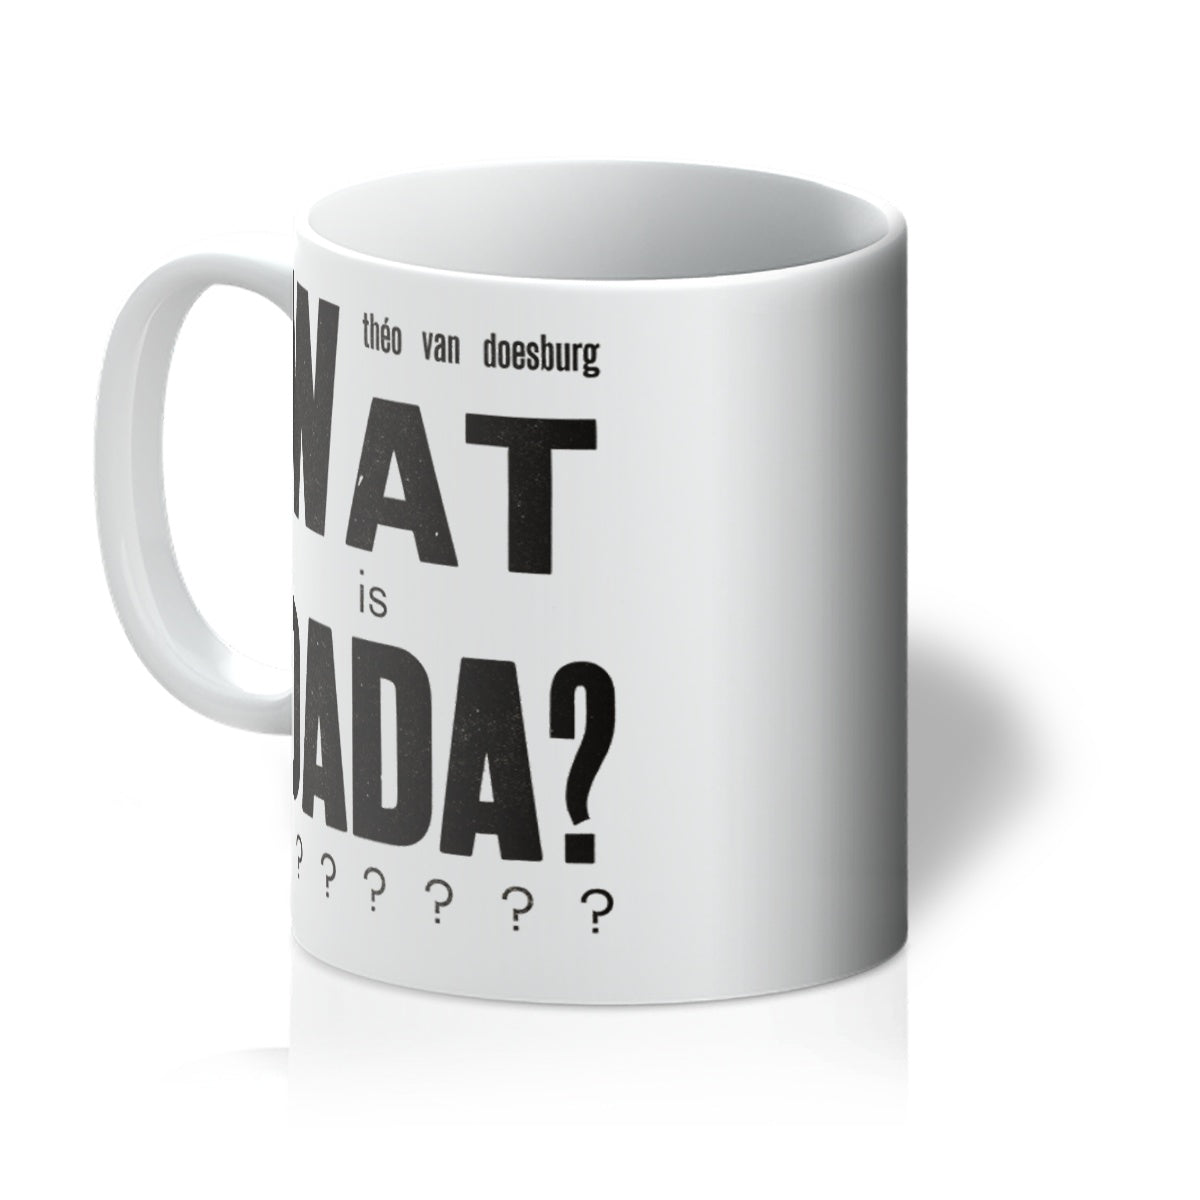 Wat is Dada by Theo van Doesburg, 1923 - Mug